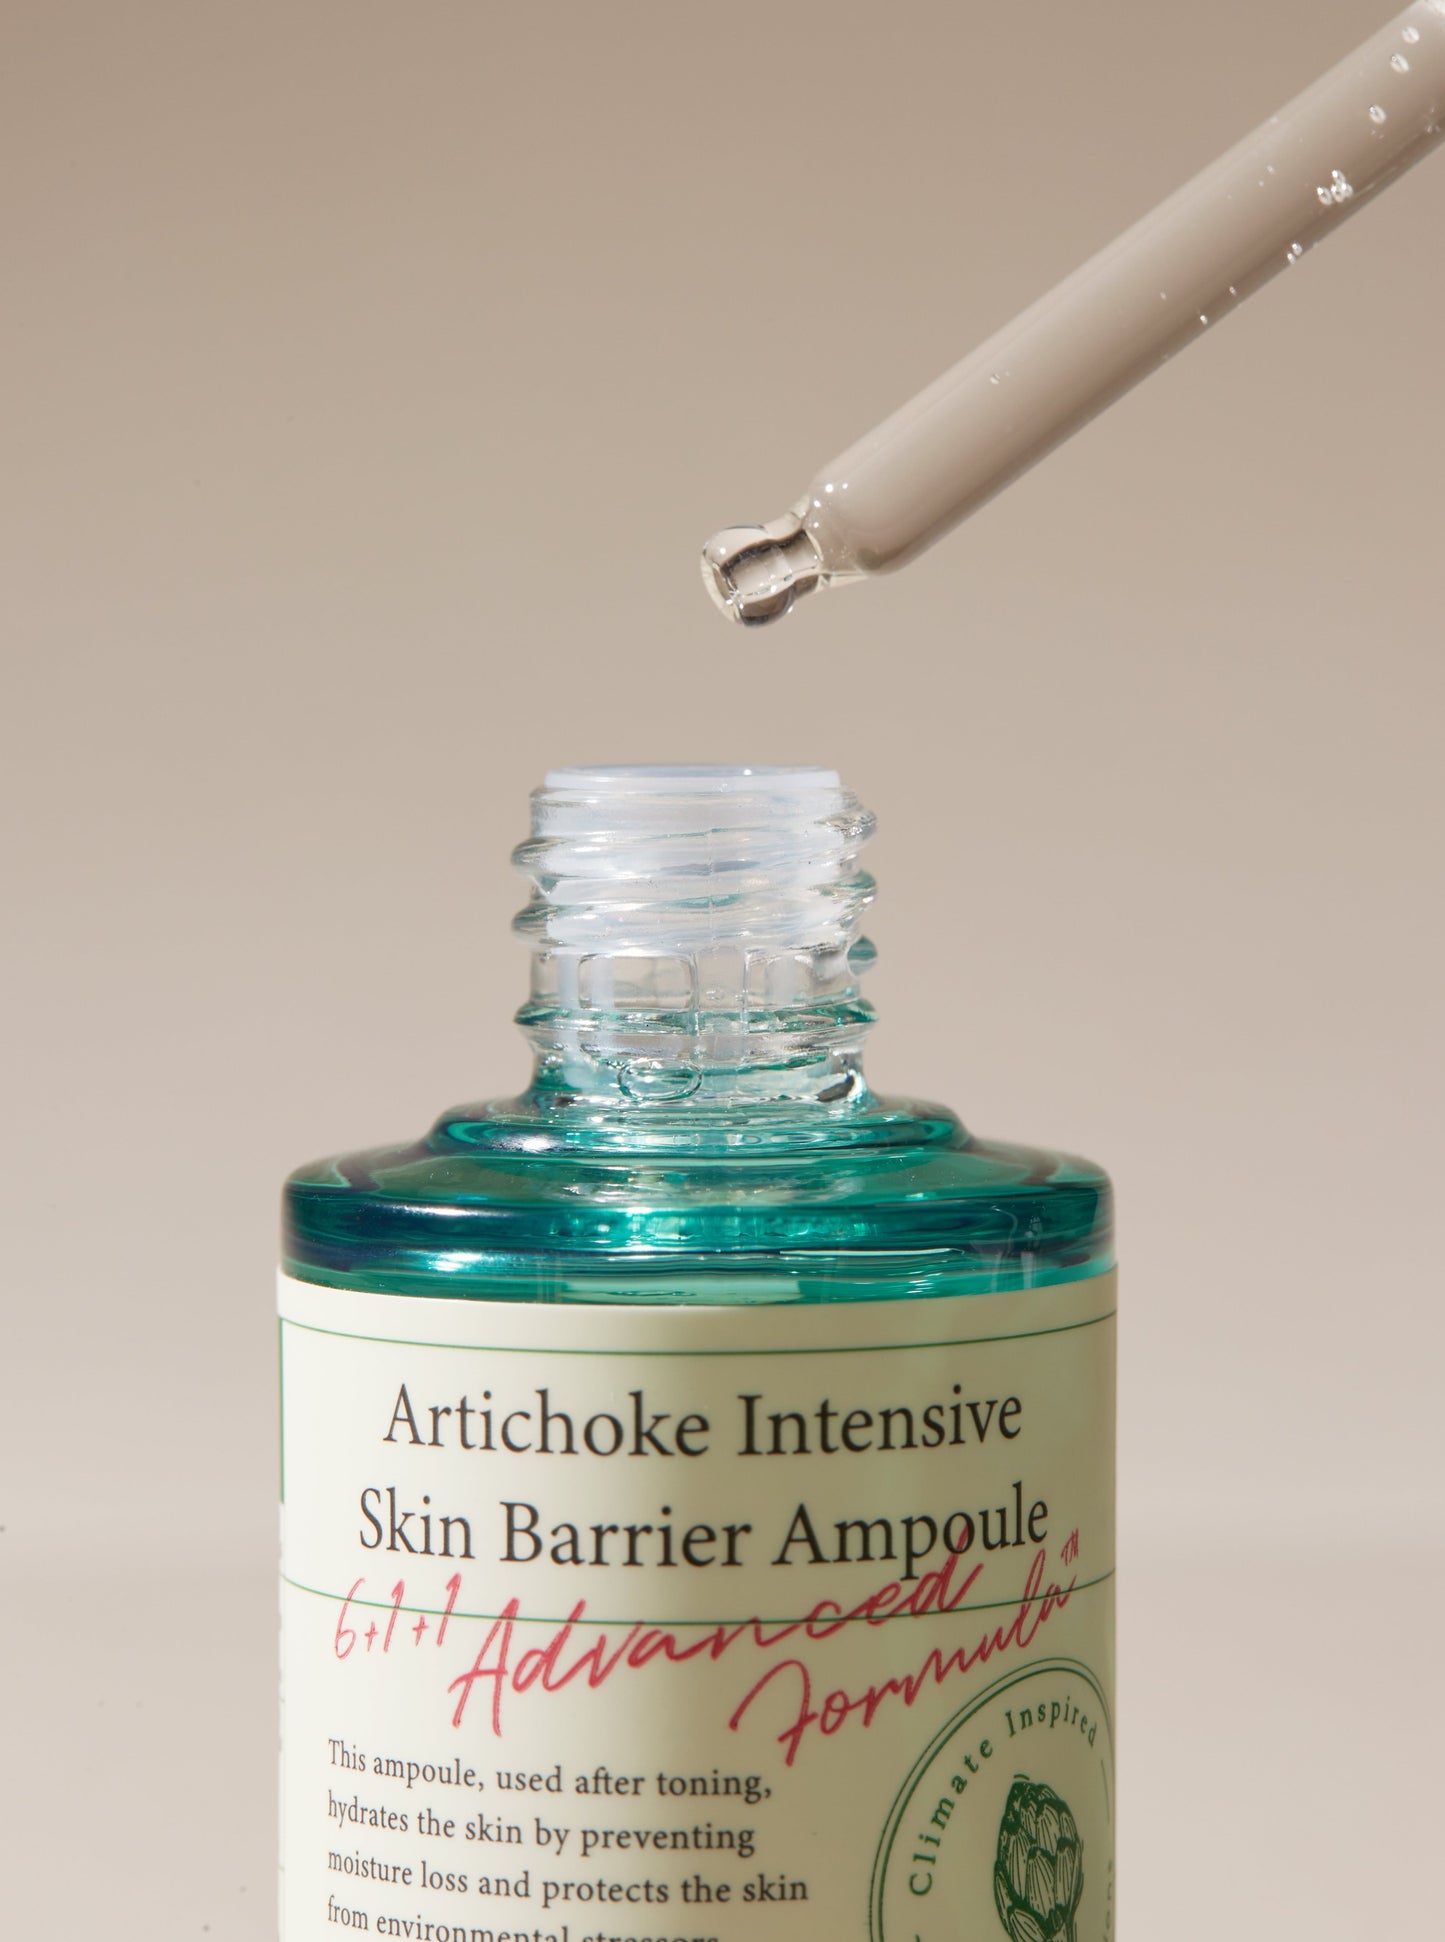 Axis-y Artichoke Intensive Skin Barrier Ampoule